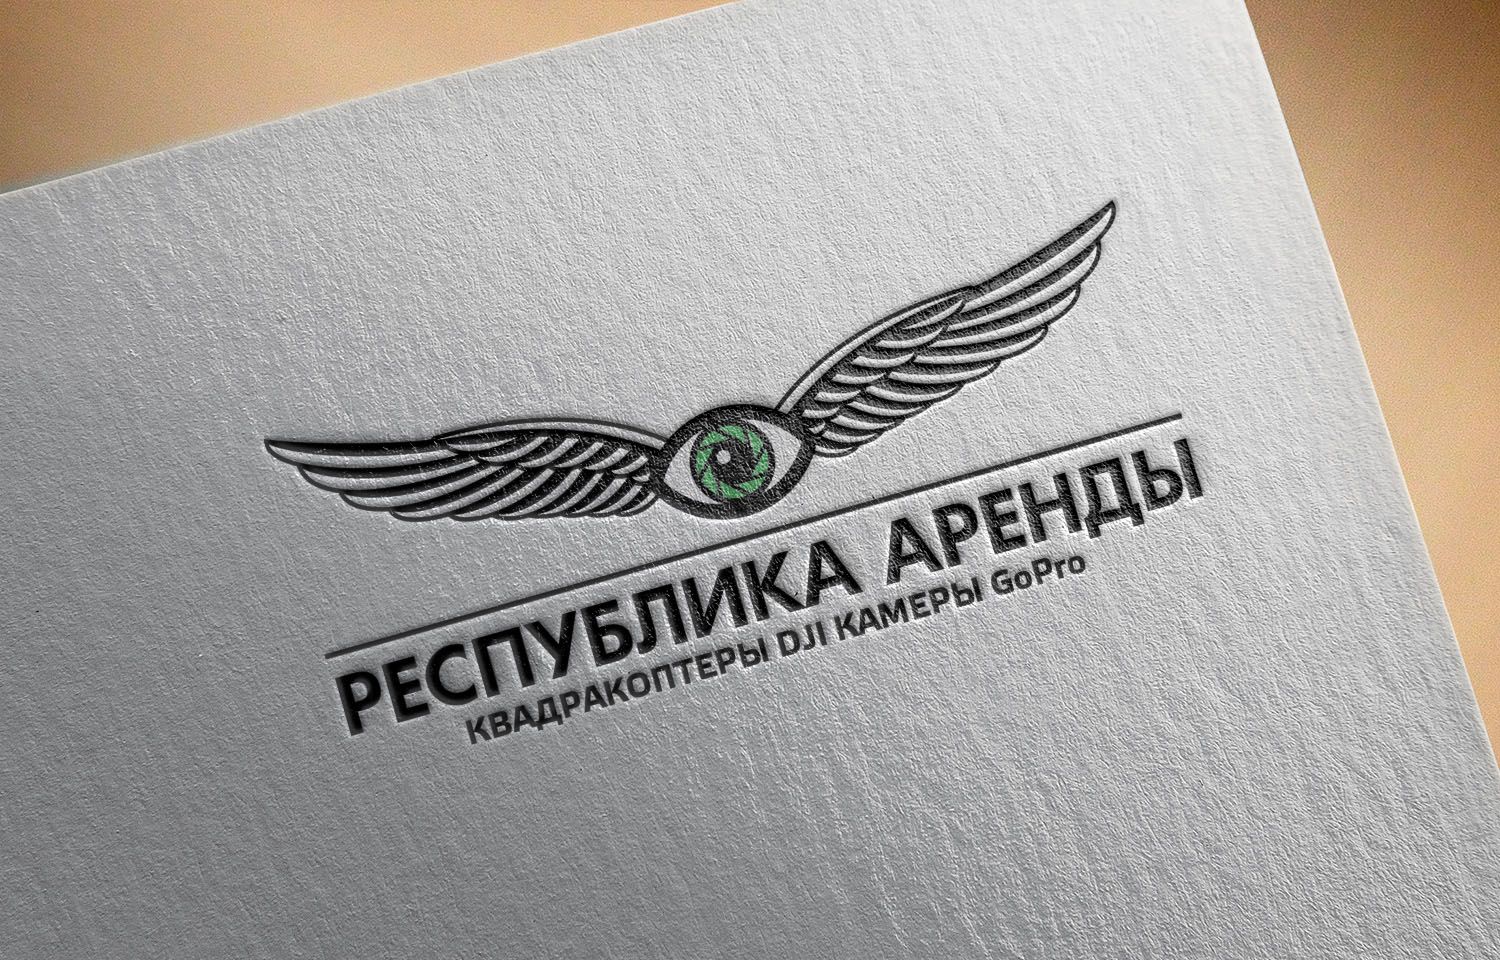 Логотип для компании по аренде квадракоптеров - дизайнер Liliy_k